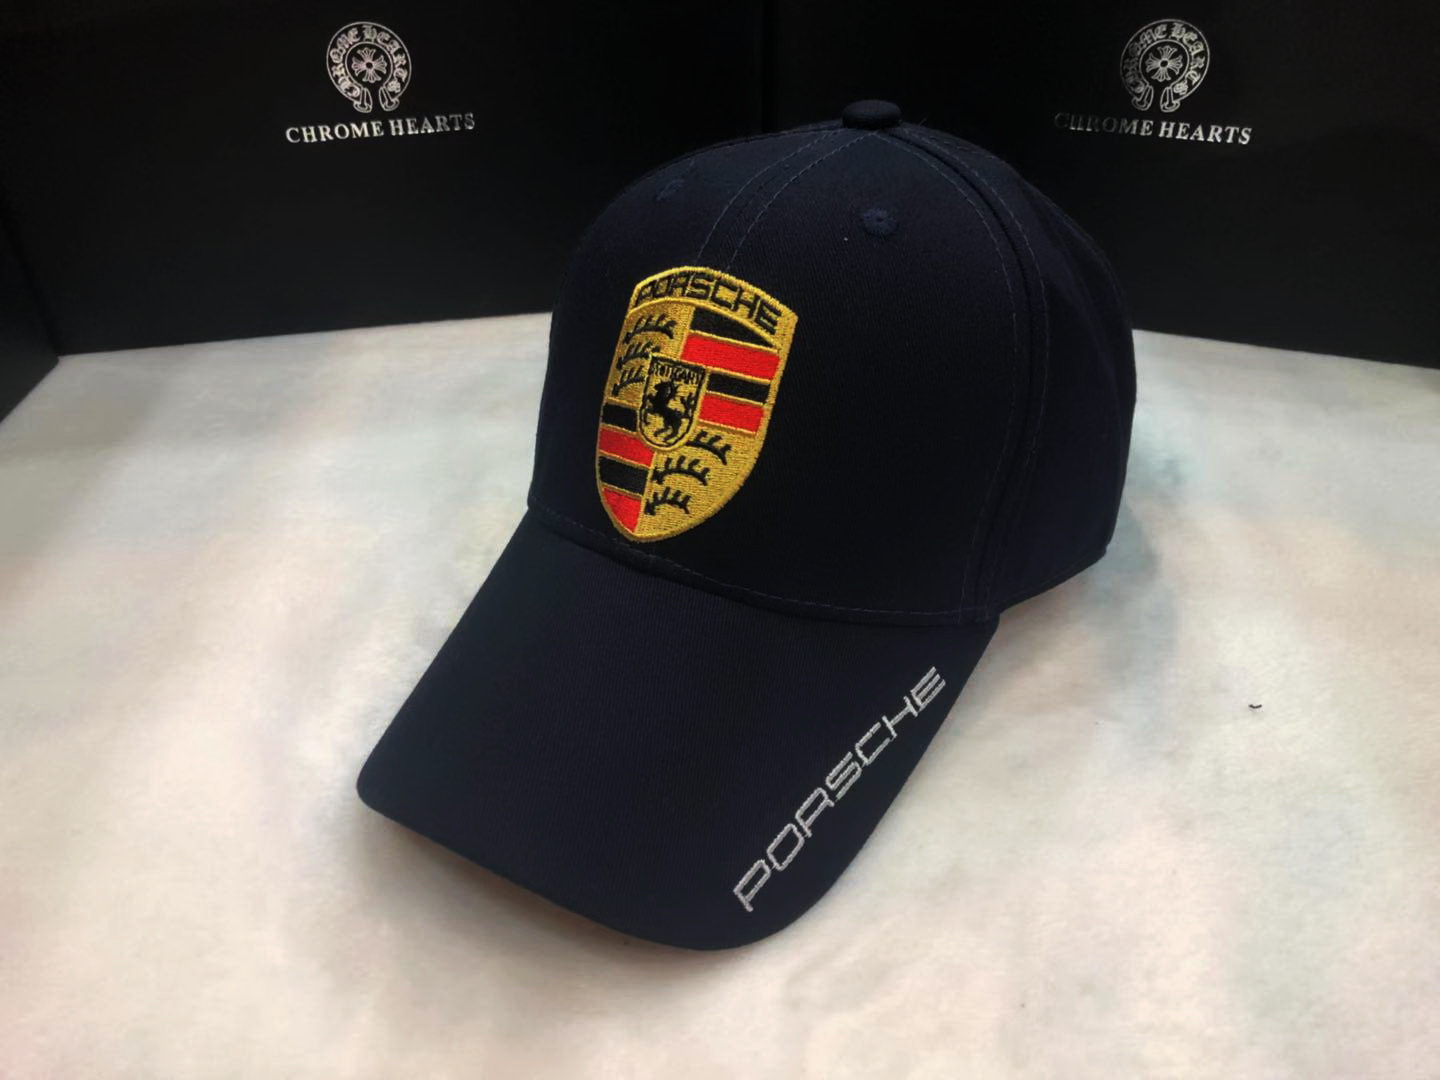 พิเศษสุดๆ!! พร้อมส่ง !!! หมวกแก๊ป Porsche Motorsport Cap AA20 CAP ผ้าใยสังเคราะห์ ดำ ขาว เขียวขี้ม้า น้ำเงิน แดง